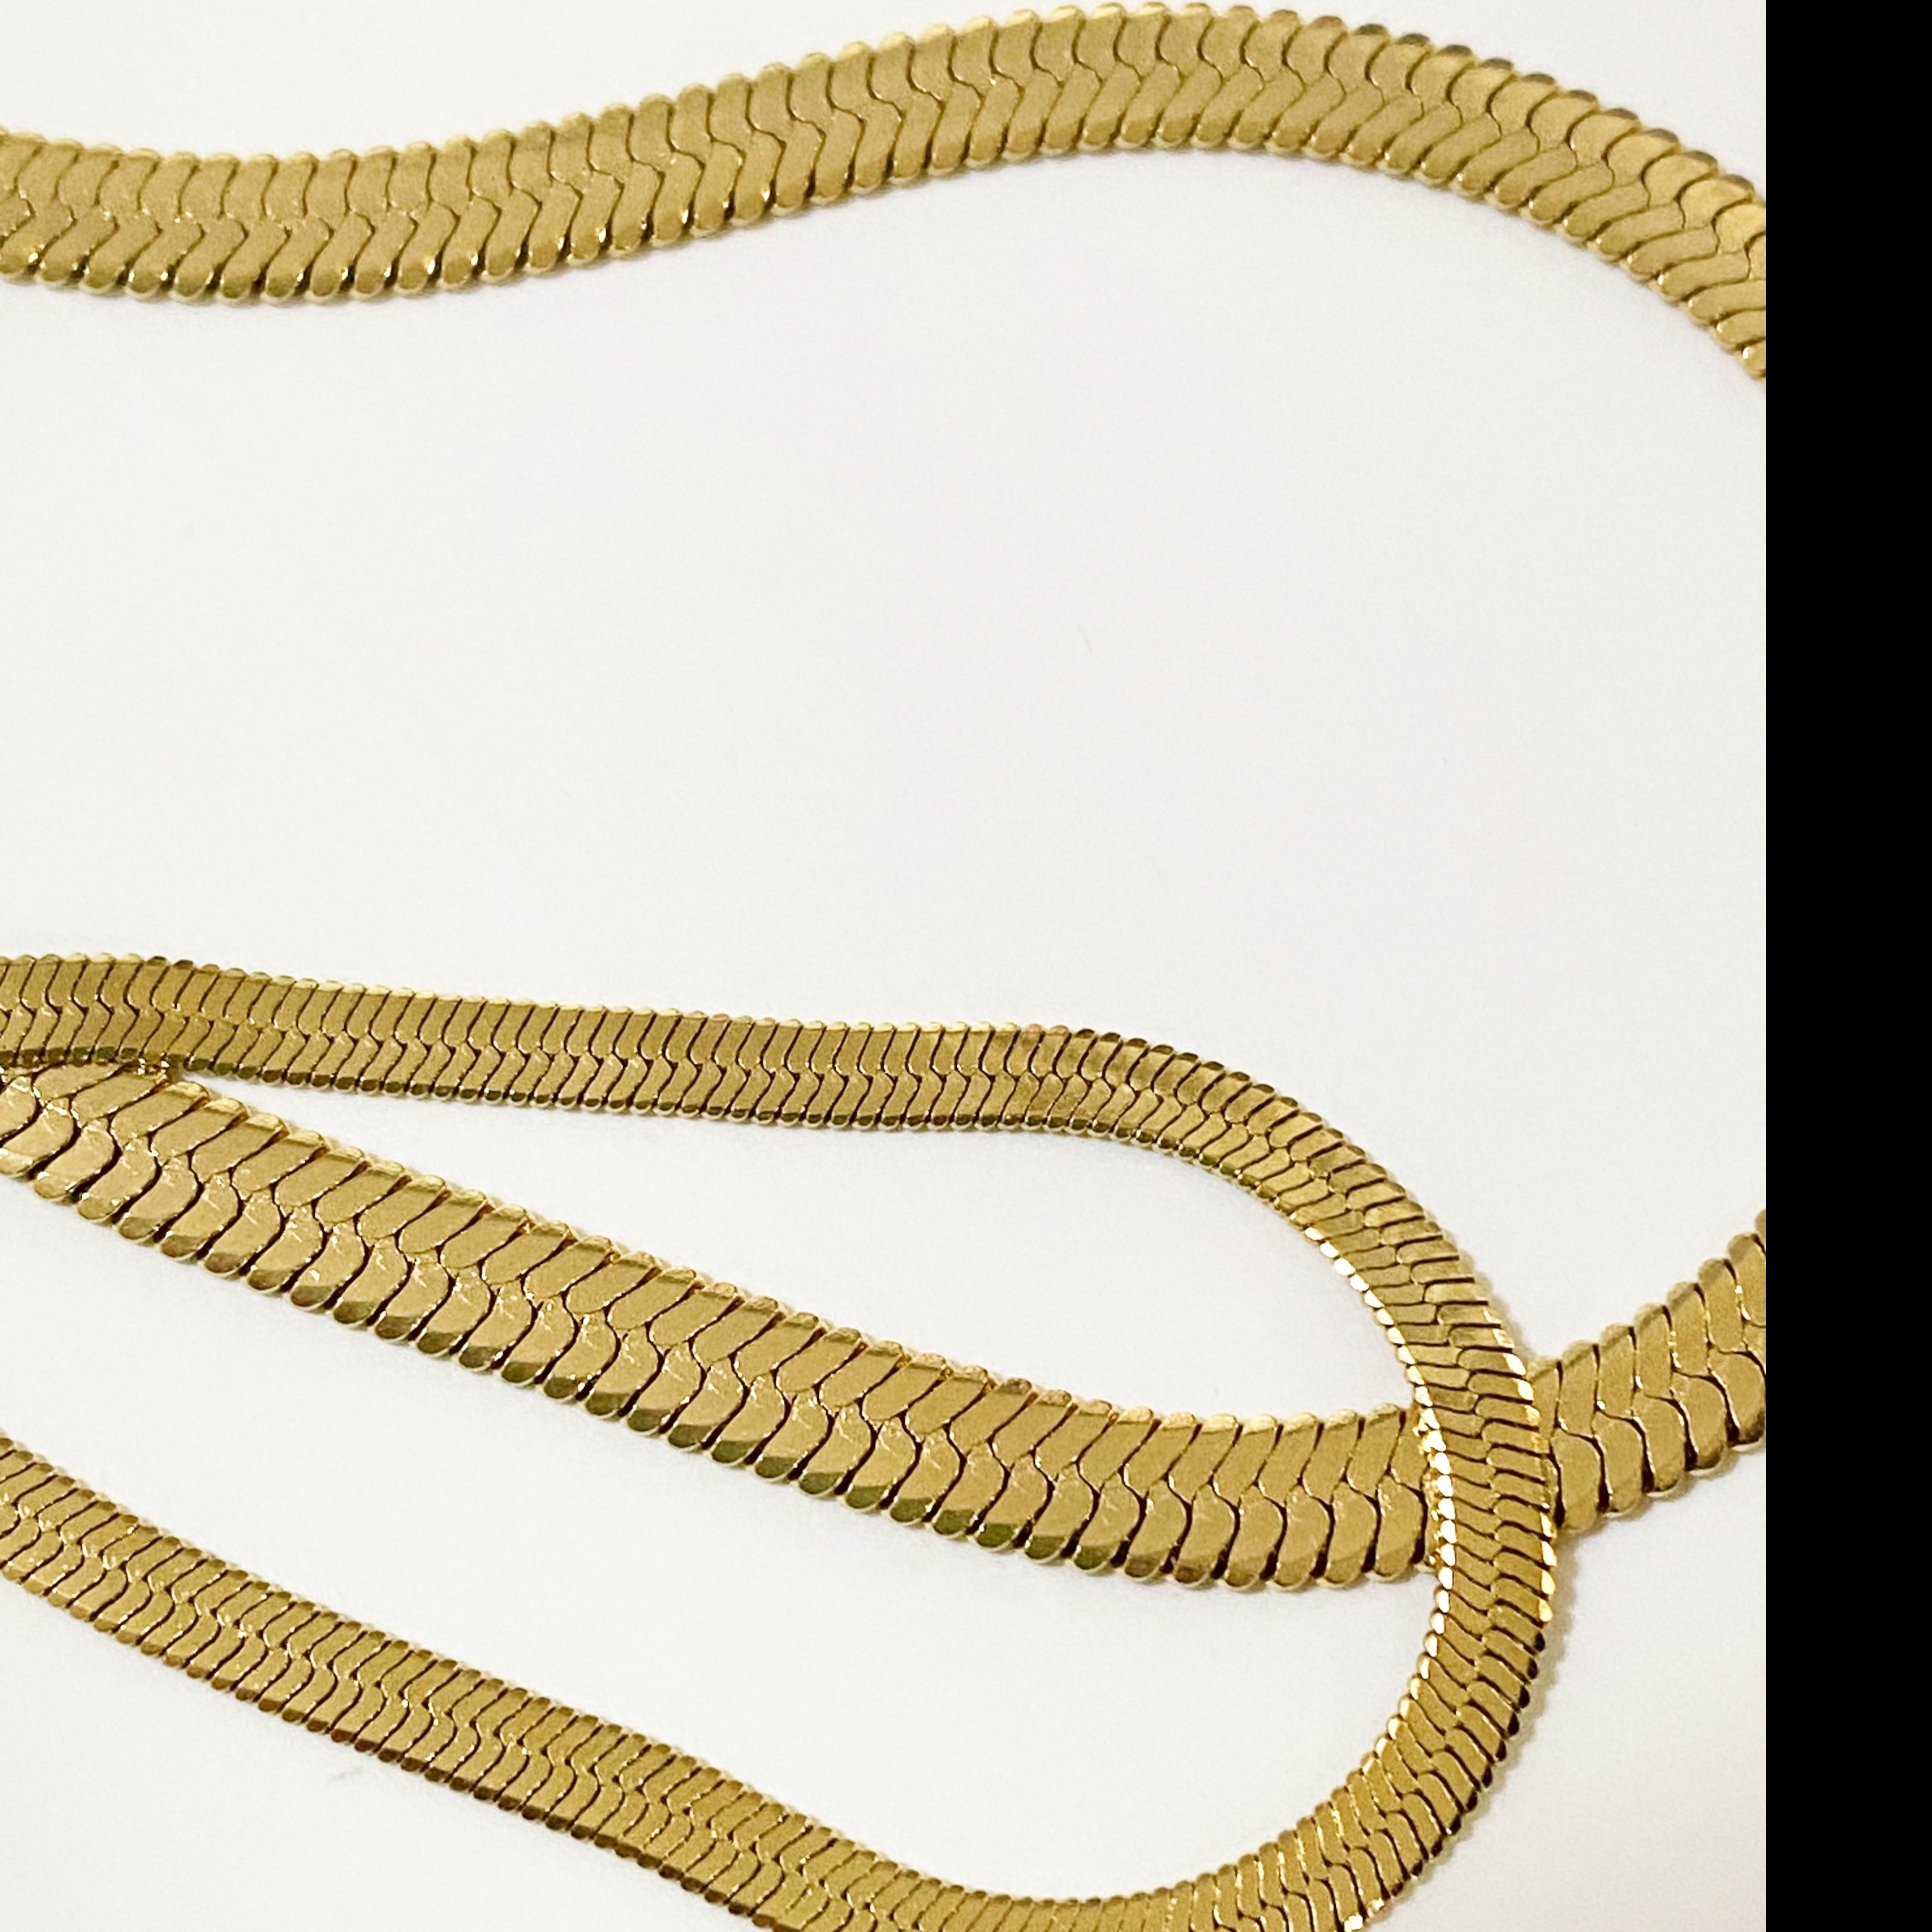 Meideya Jewelry Snake Chain Necklace